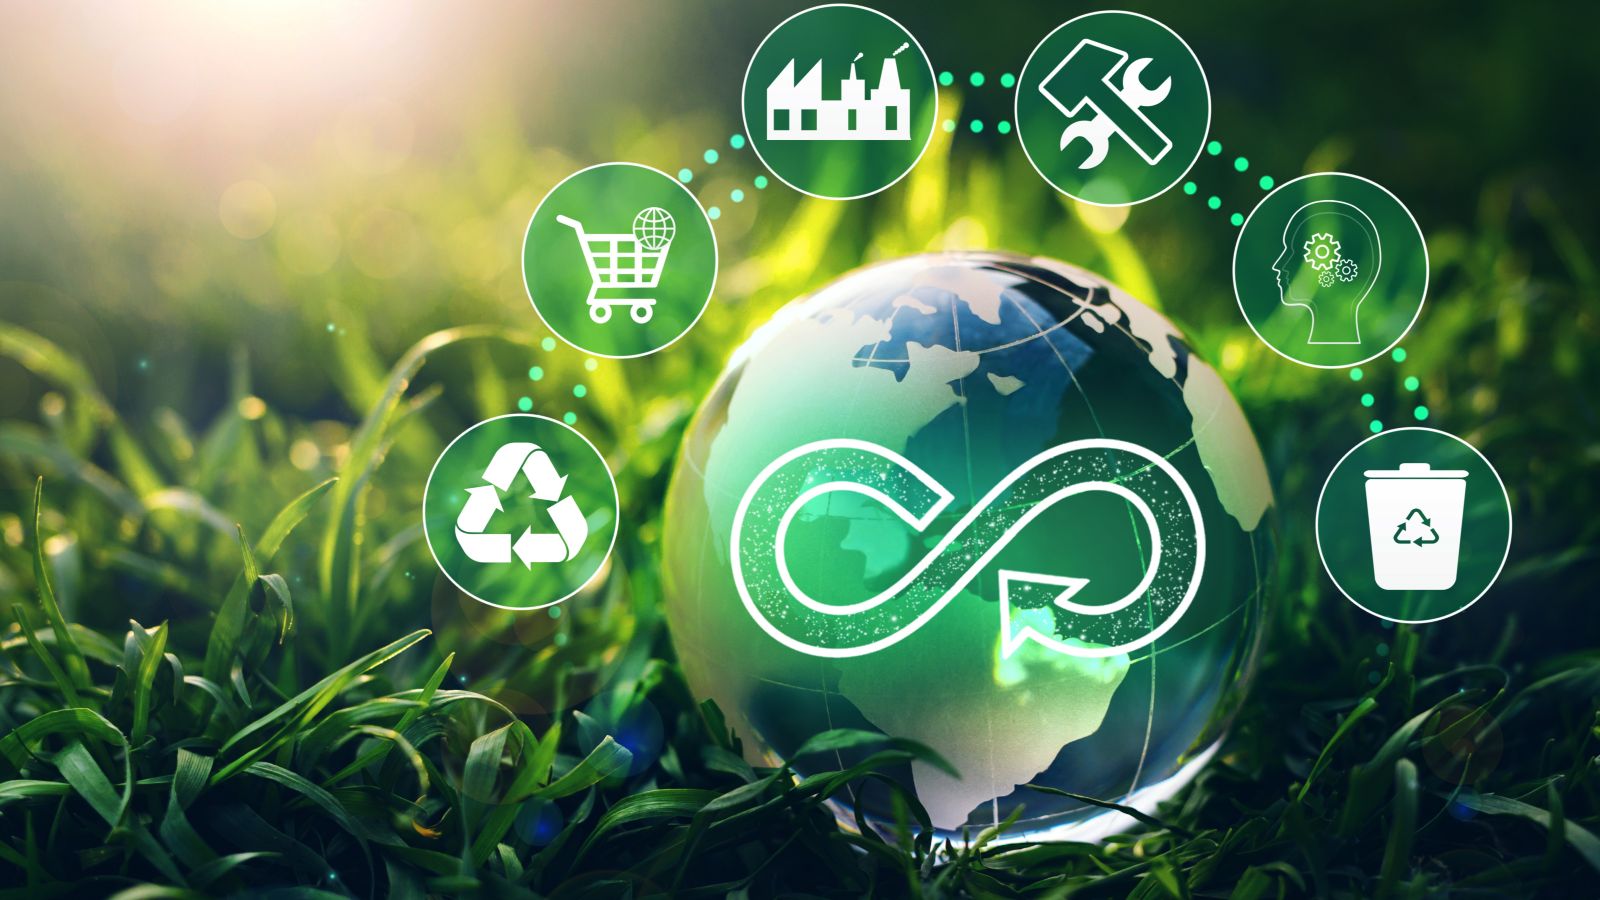 Das Bild zeigt eine im Gras liegende Weltkugel aus Glas. Oberhalb der Weltkugel finden sich 6 Symbole zum Thema Kreislaufwirtschaft, wie z.B. Recycling, Wiederverwendung, Reparieren.